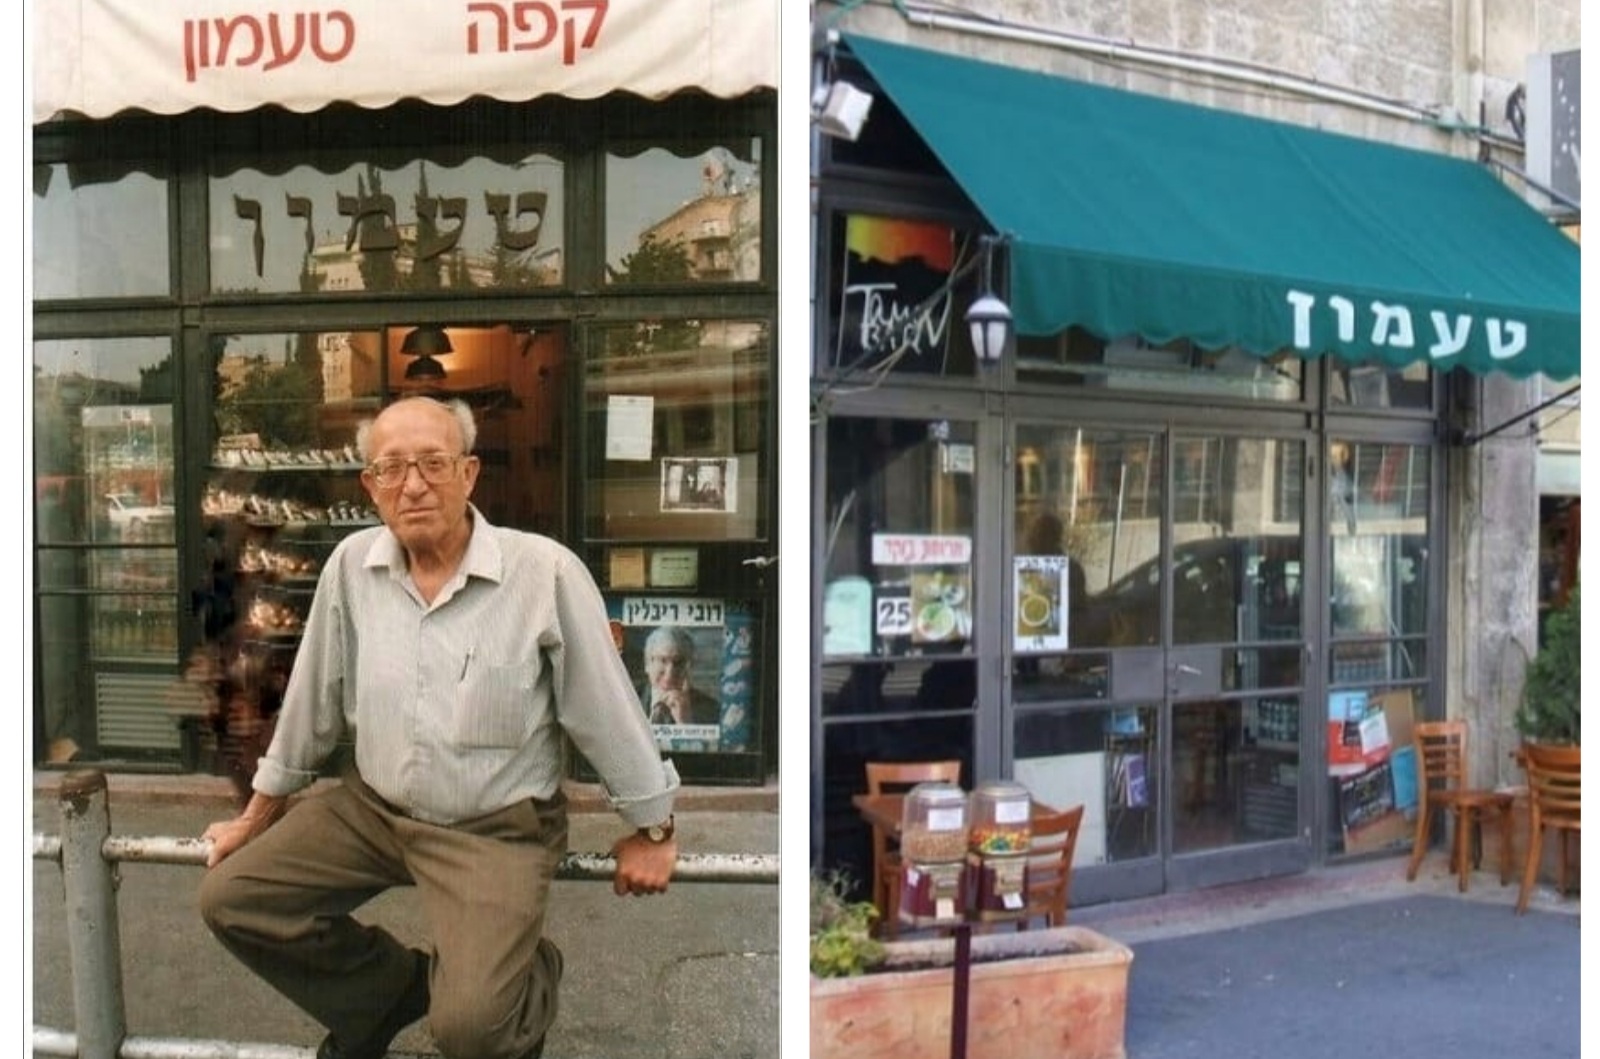 ה"טעמון" חוזר לירושלים: נחנכה הרחבה על שם בית הקפה "טעמון" במרכז העיר